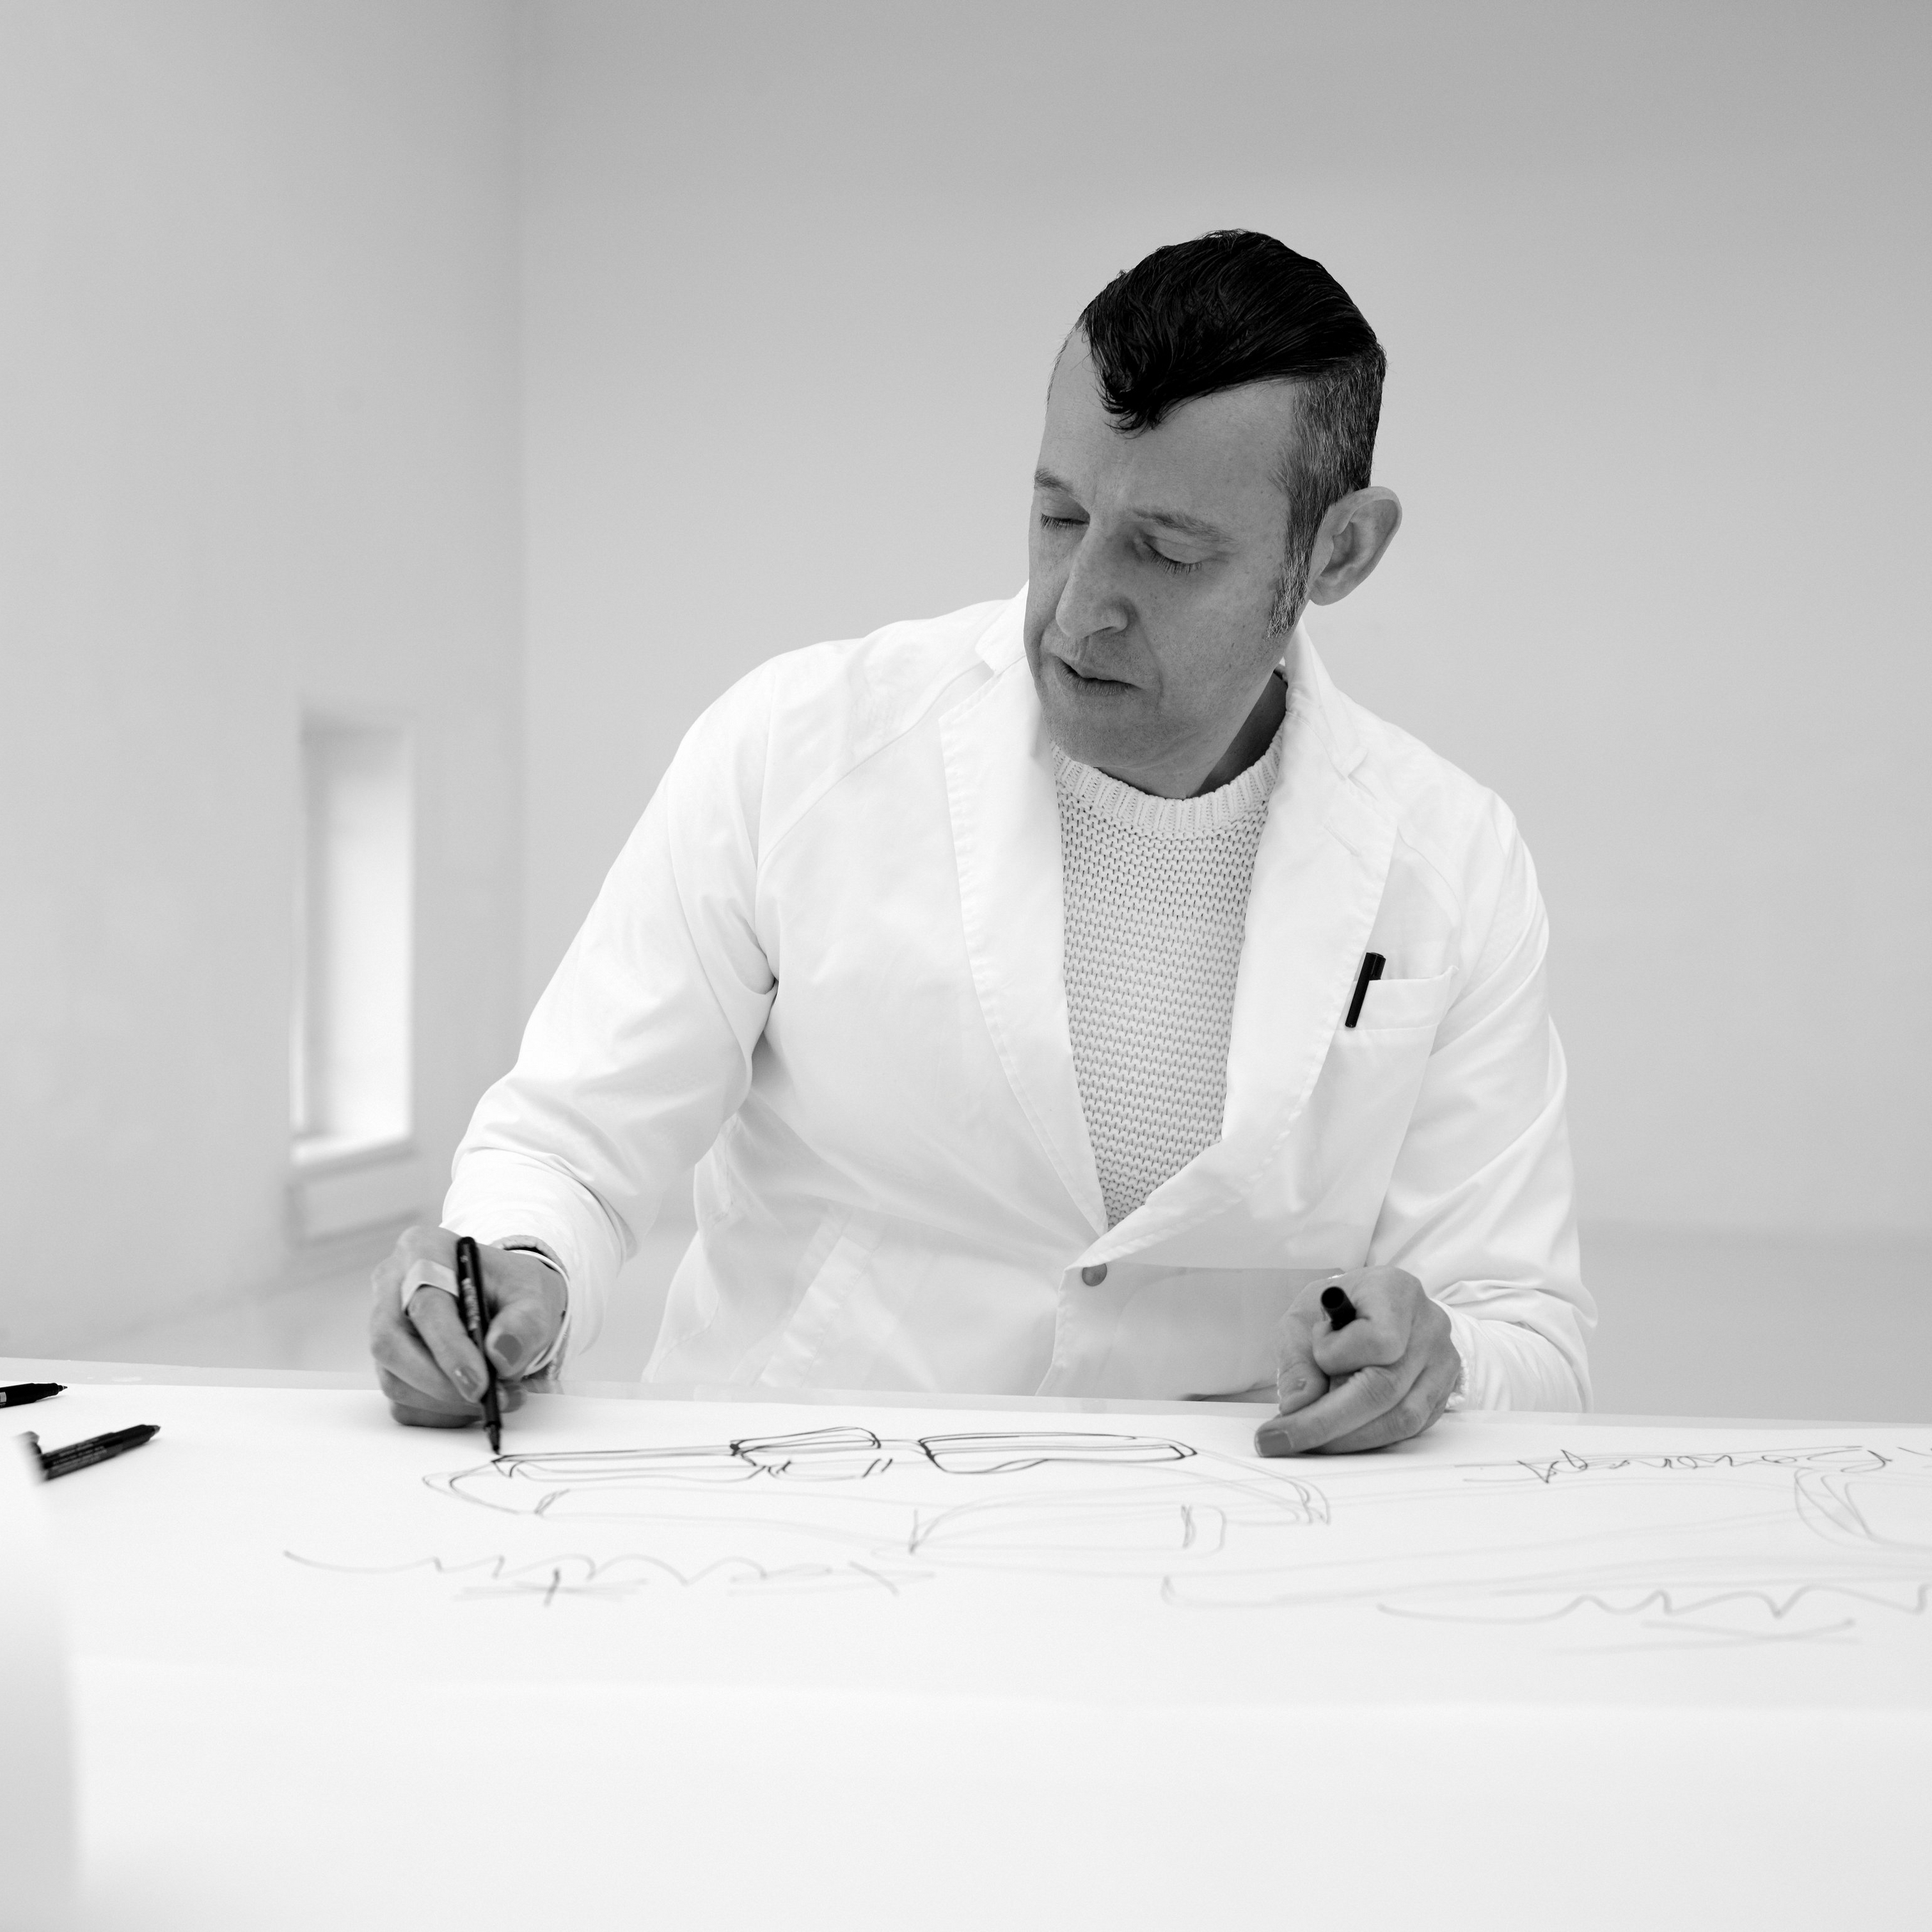 Le designer Karim Rashid